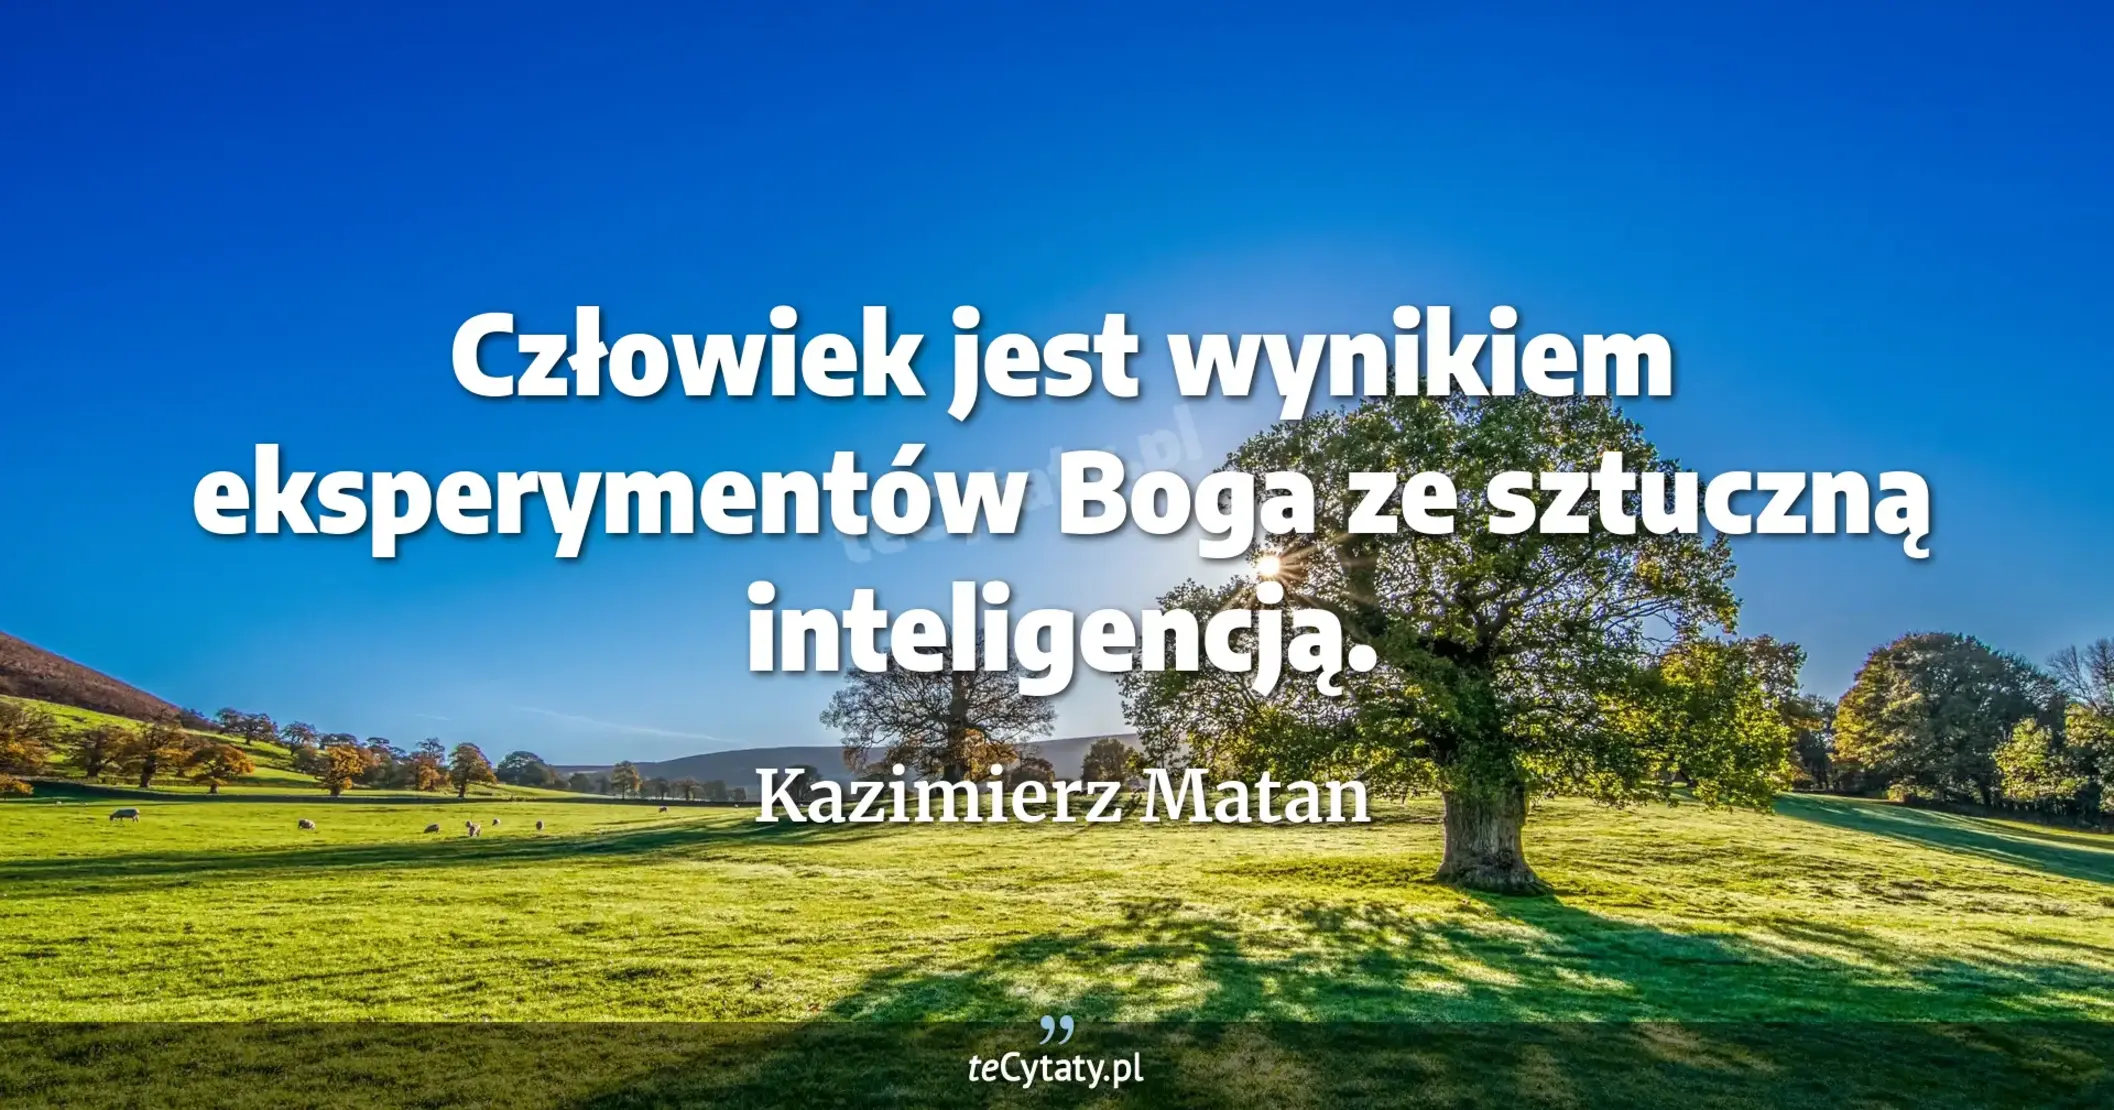 Człowiek jest wynikiem eksperymentów Boga ze sztuczną inteligencją. - Kazimierz Matan